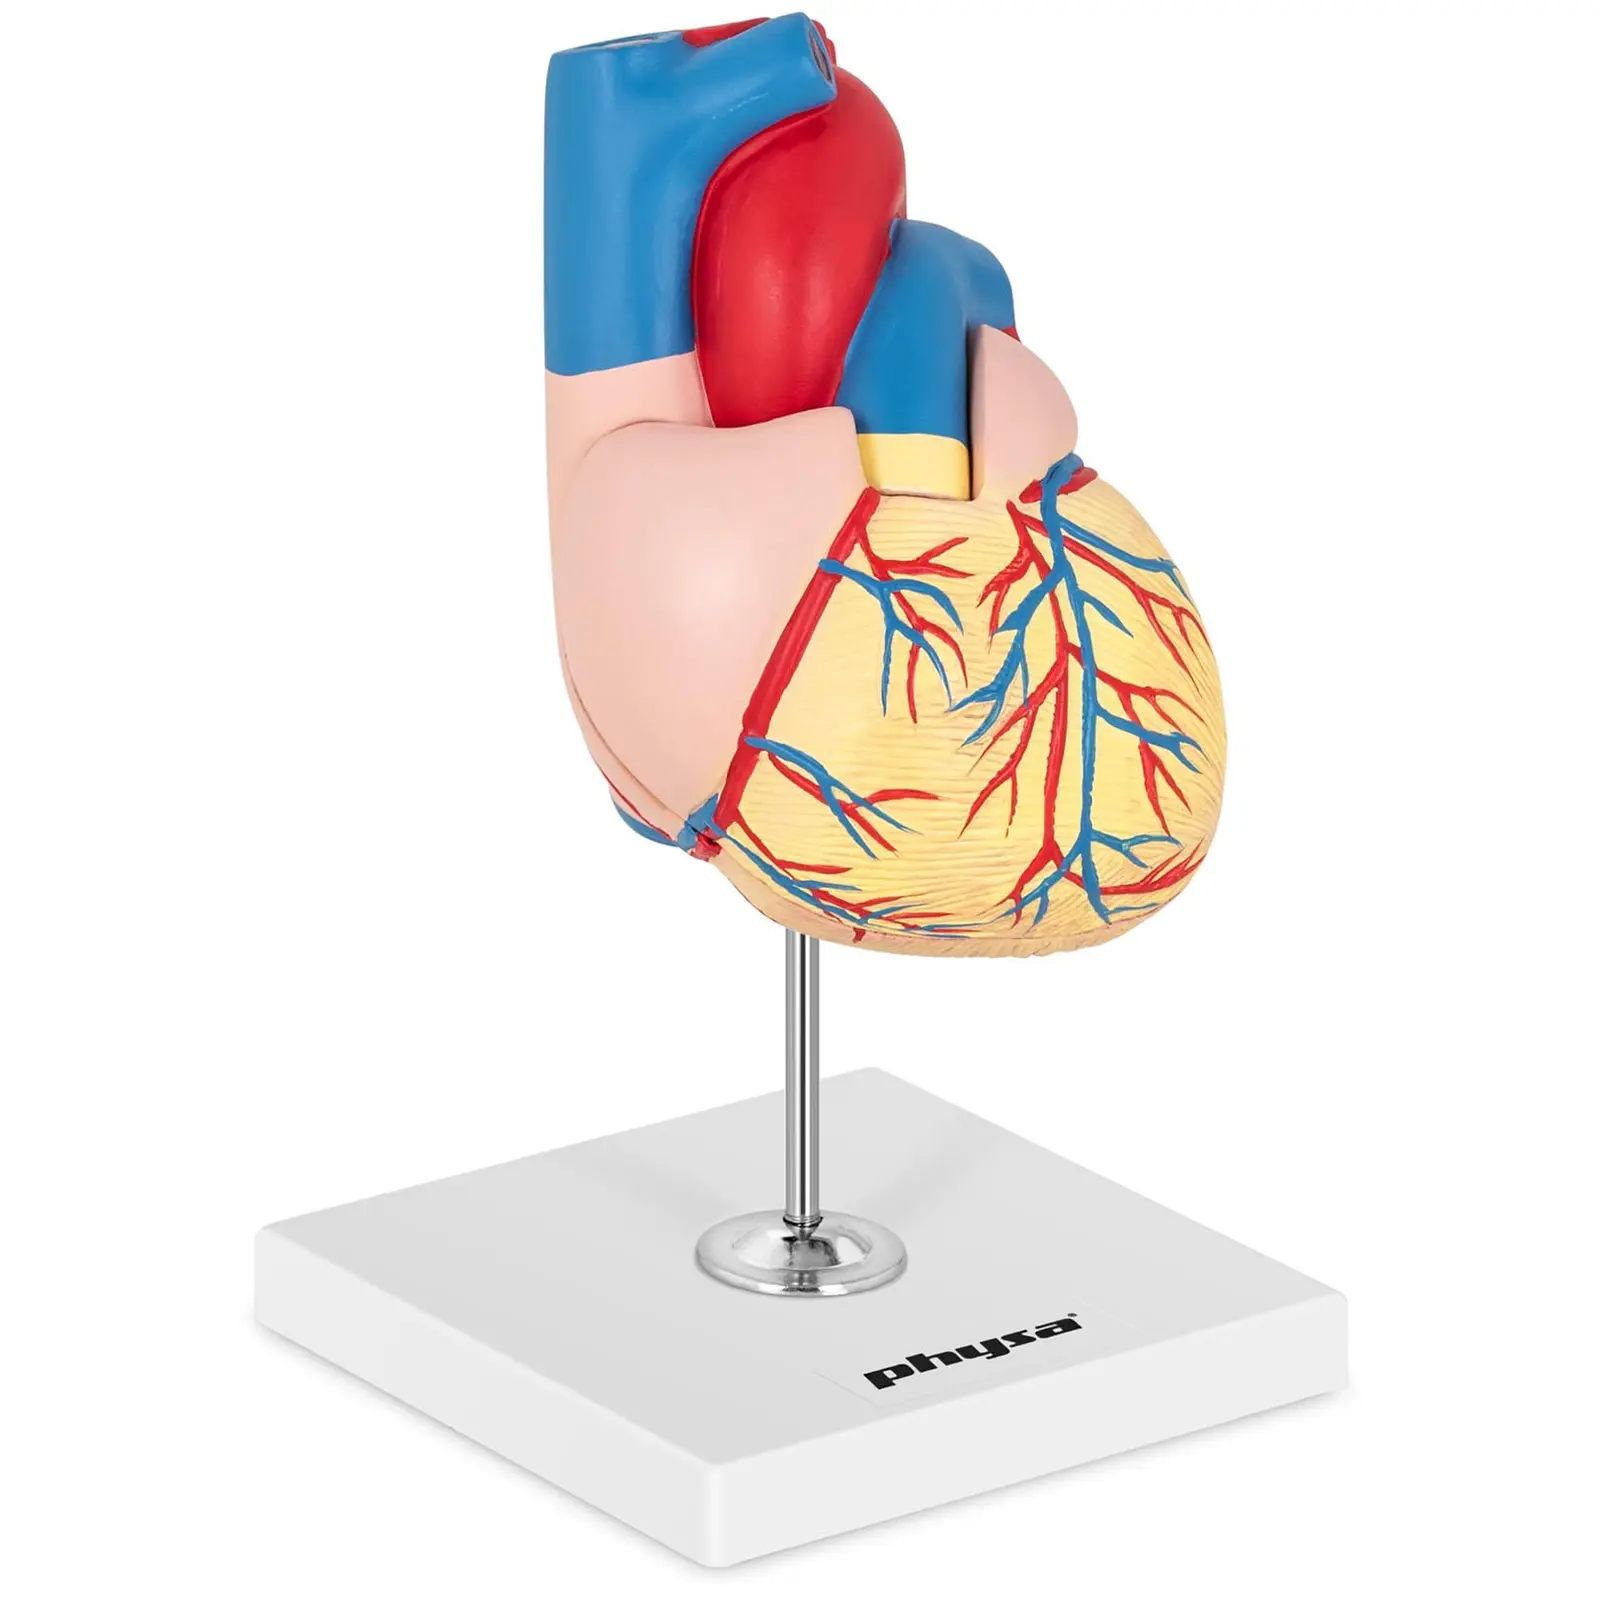 Maquette anatomique du cœur humain - En 2 parties - Grandeur nature - 1